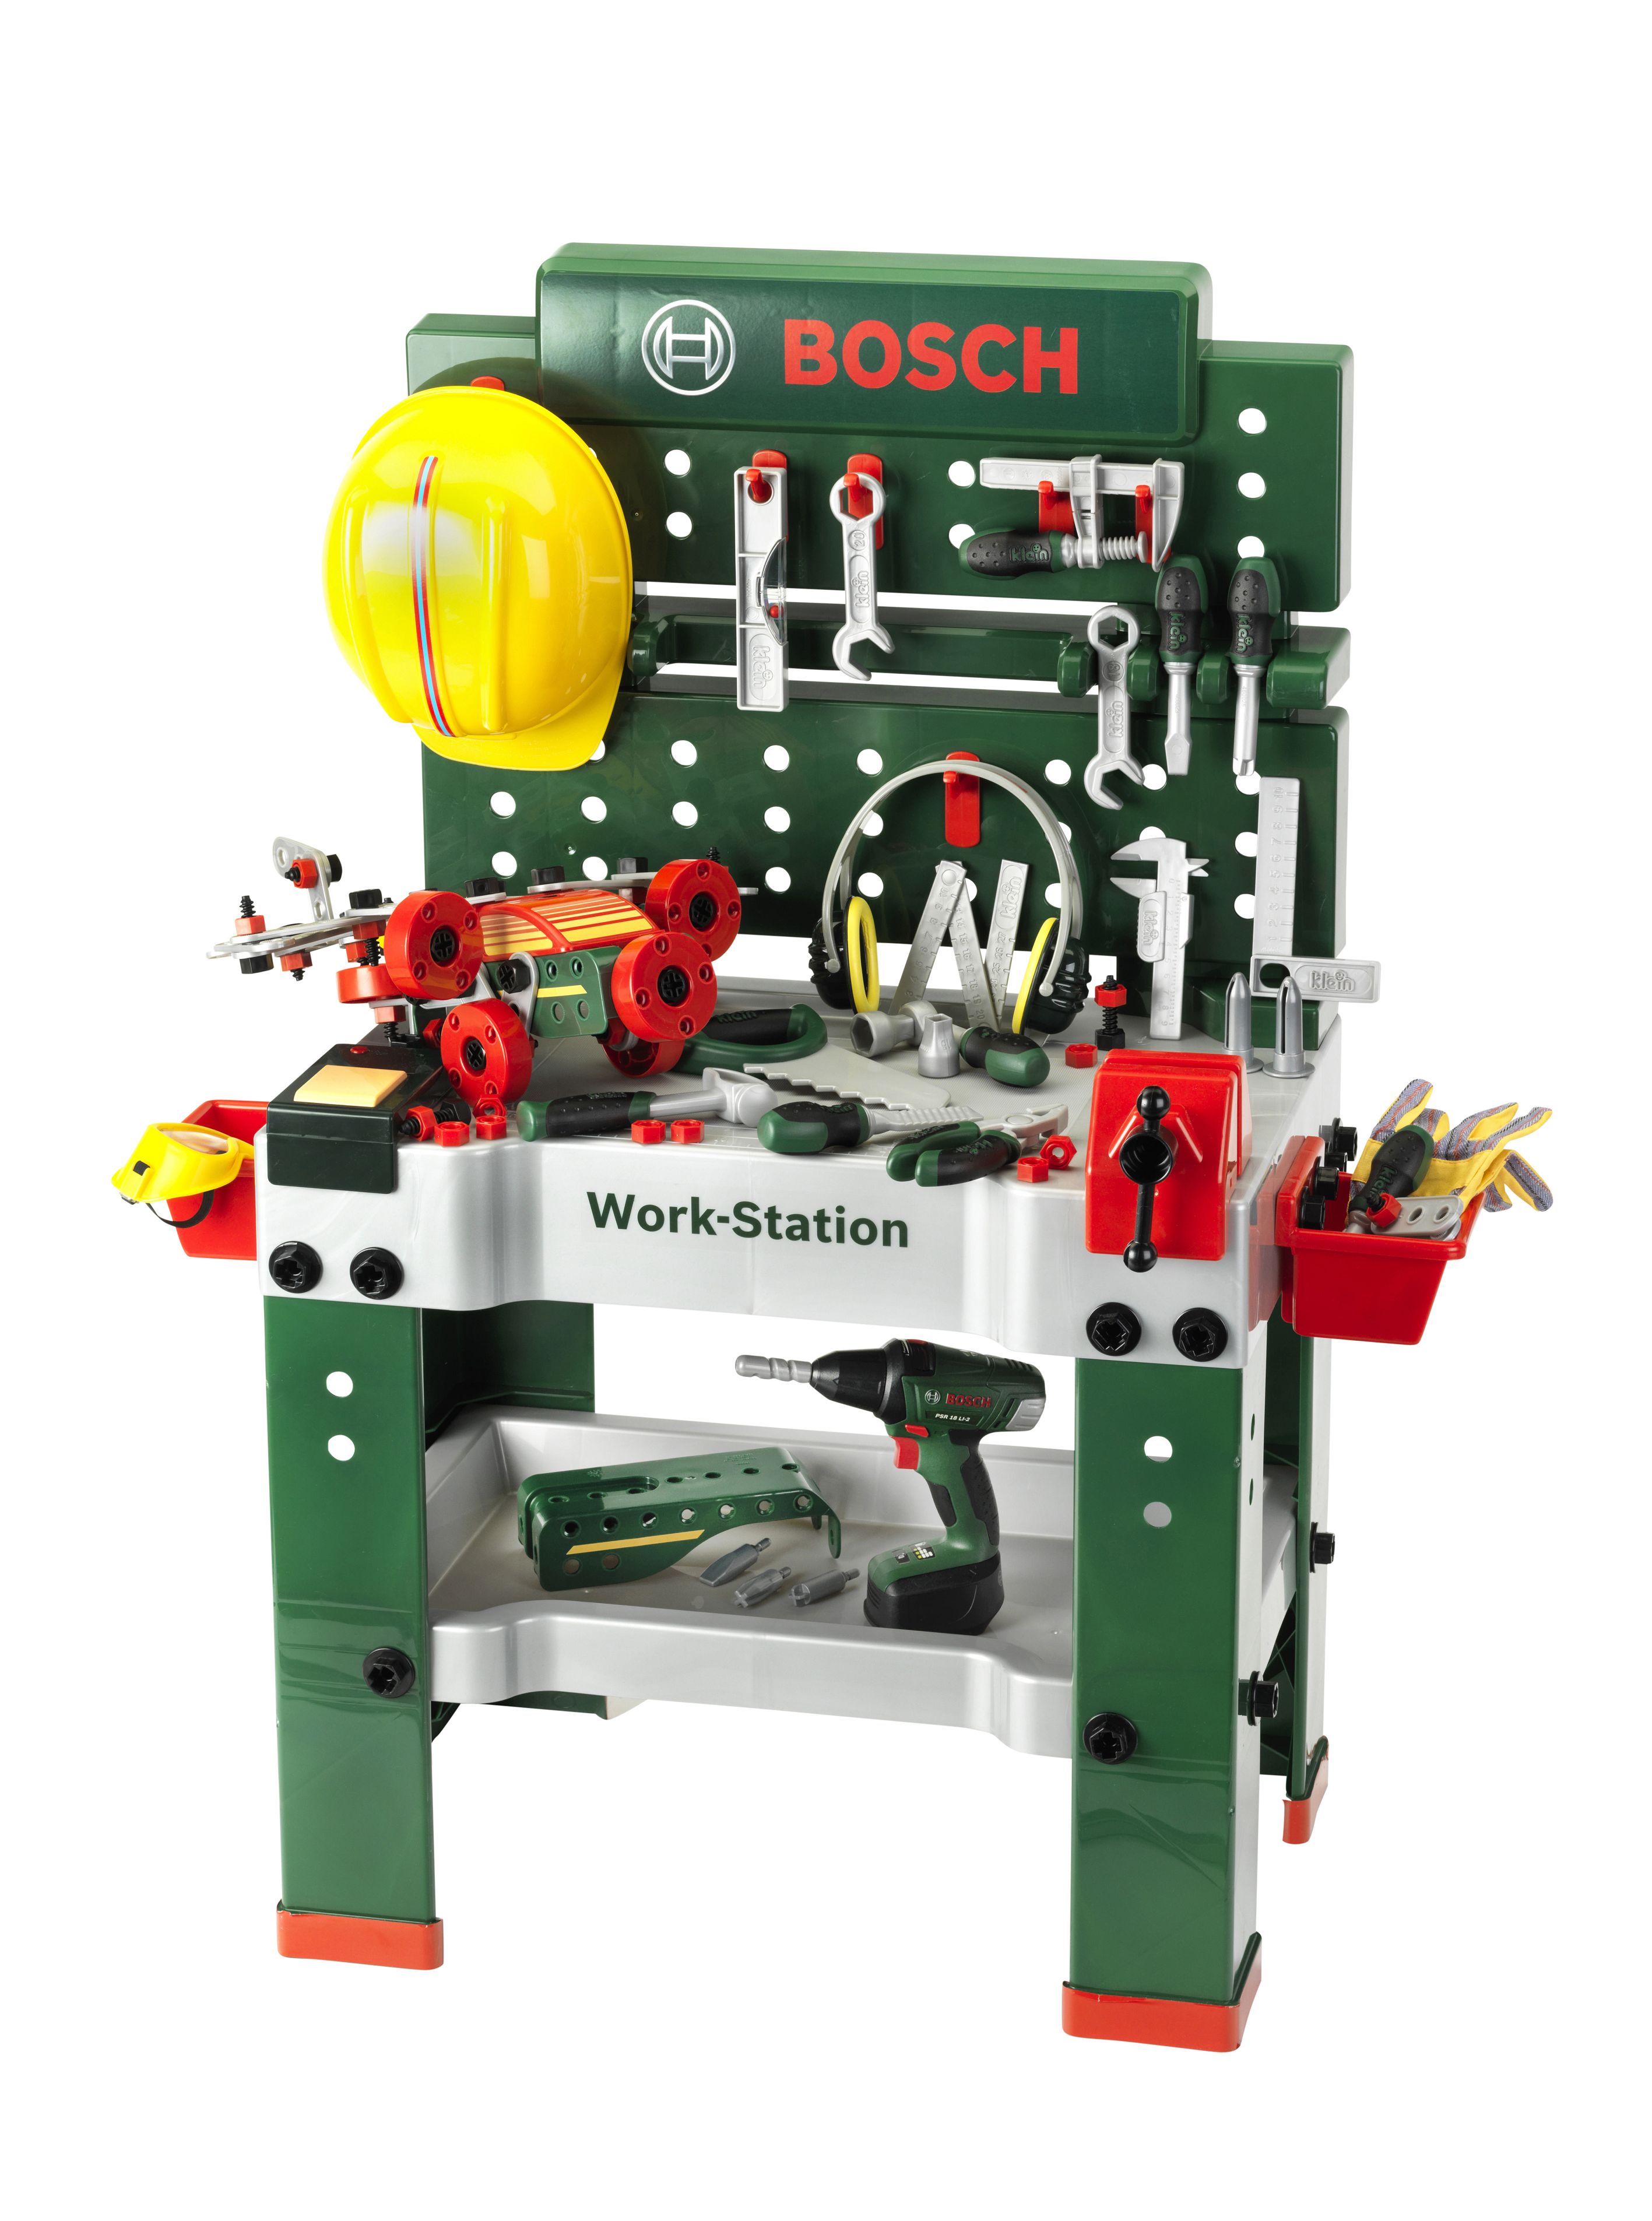 onder huwelijk Warmte Bosch Workbench No. 1 | Klein Toys